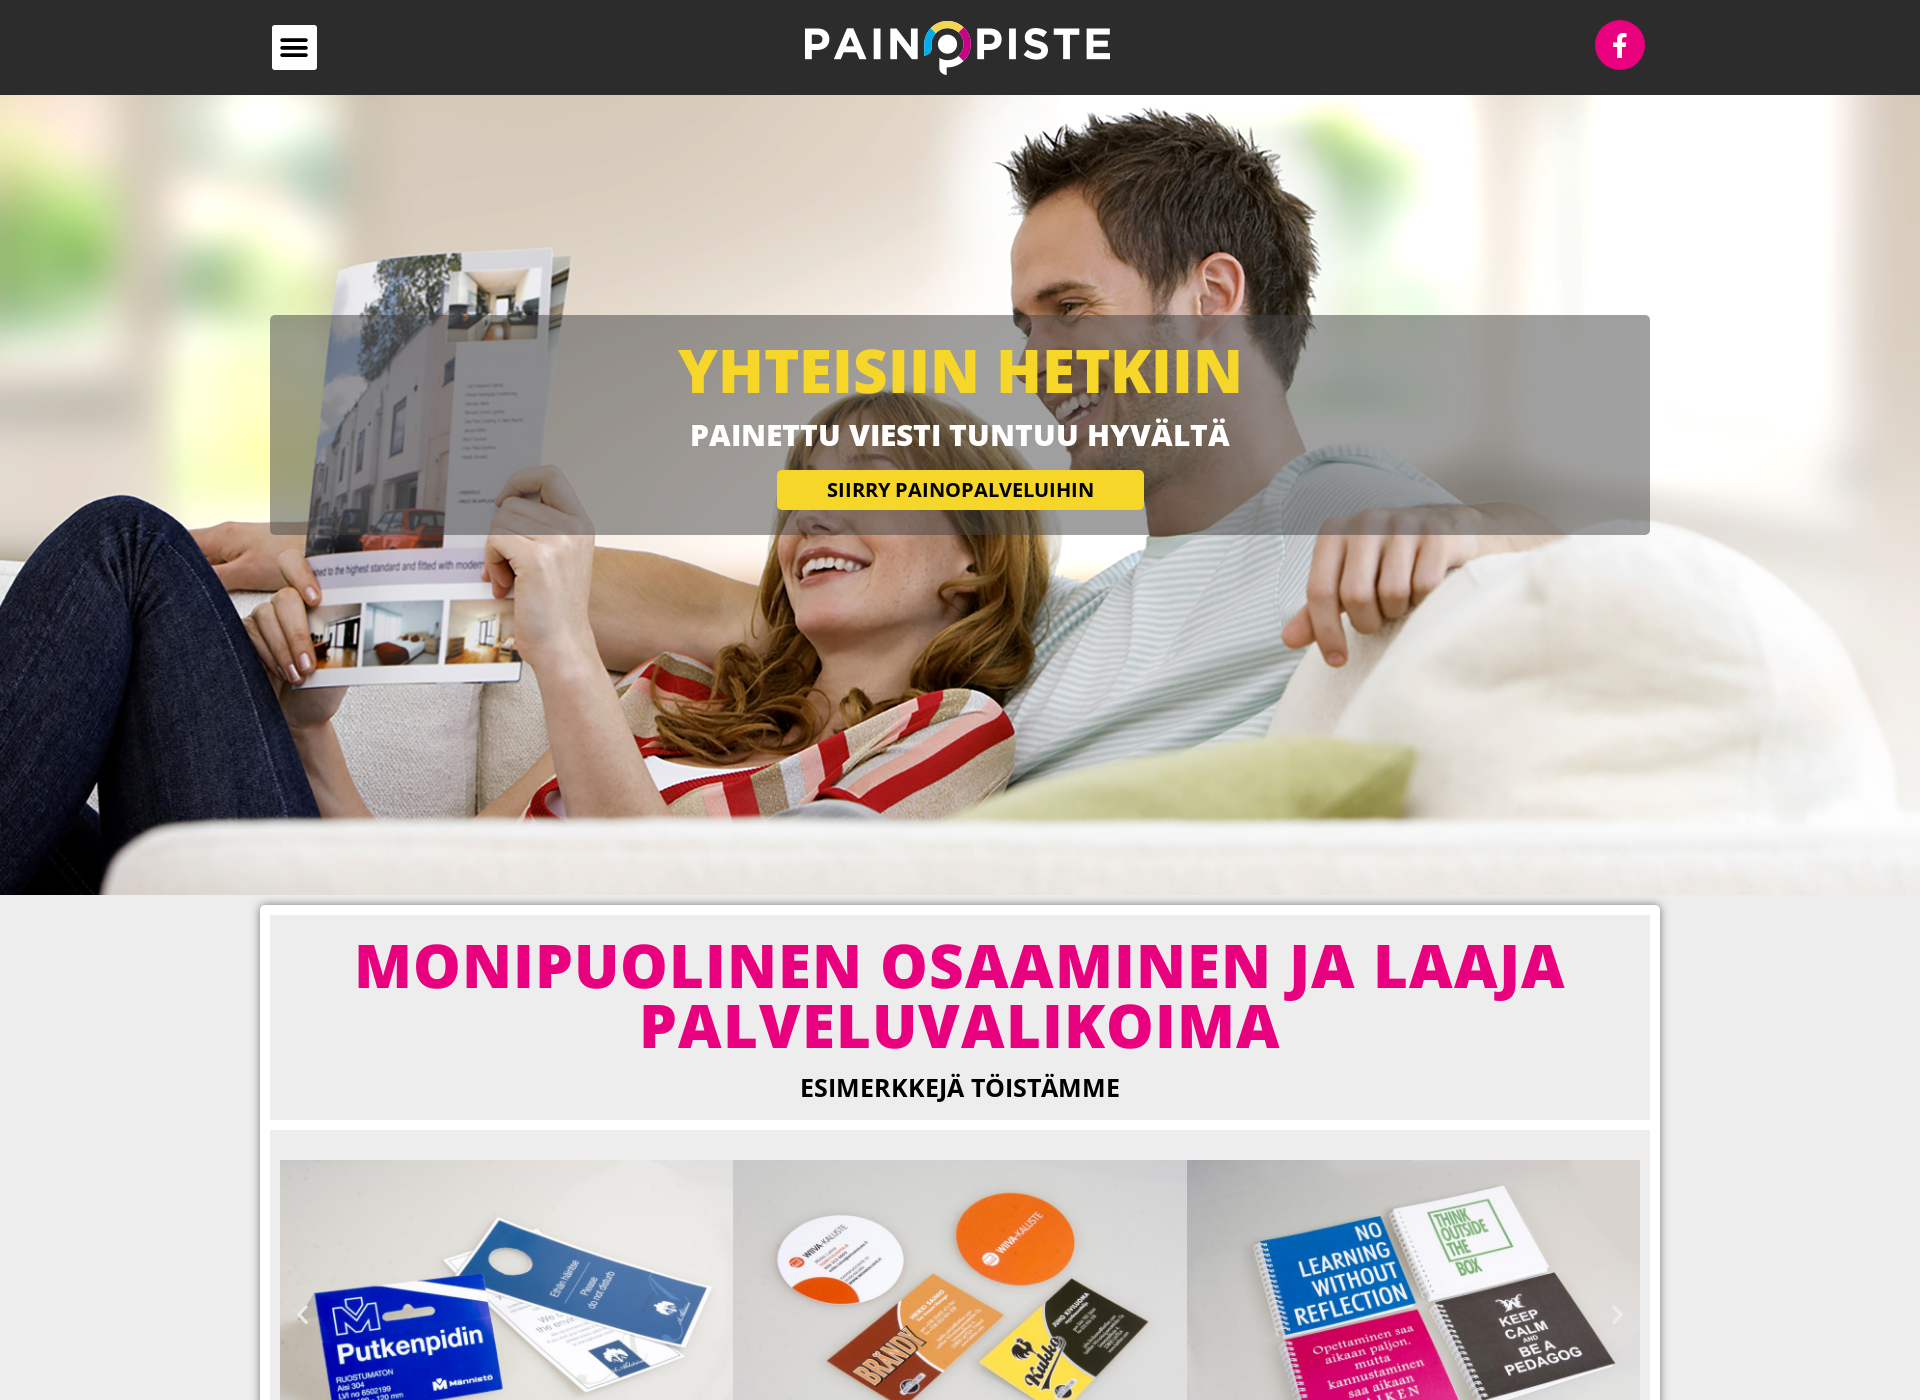 Näyttökuva raumanpainopiste.fi